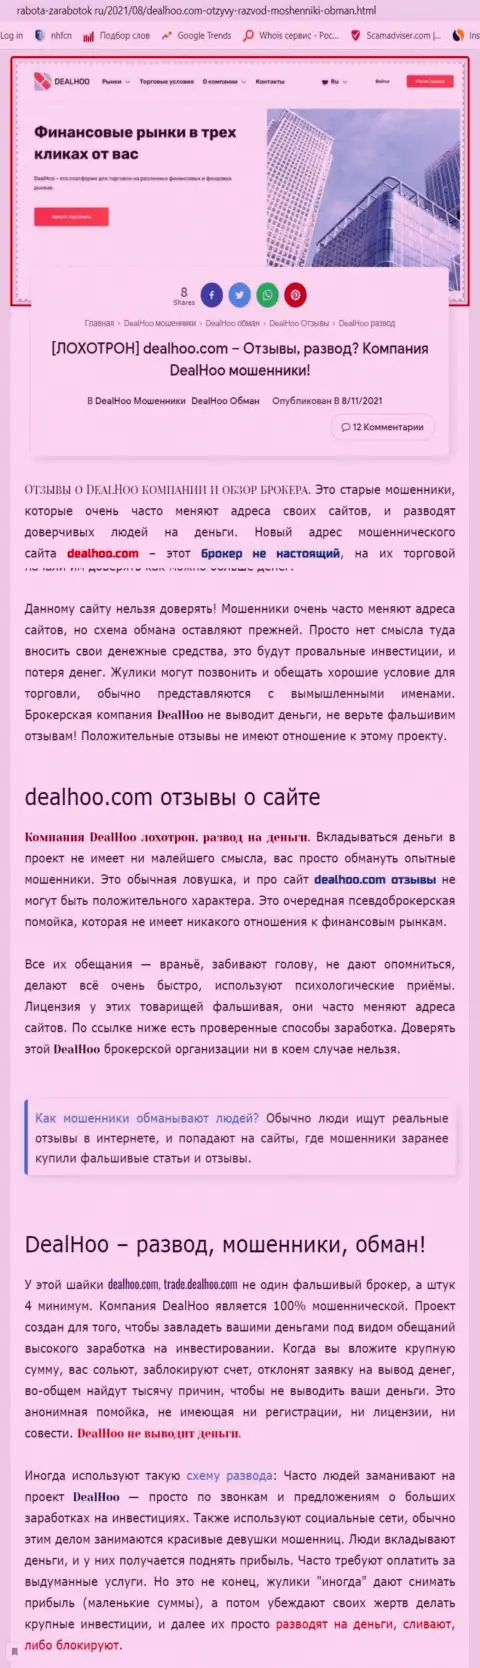 DealHoo Com - это МОШЕННИКИ !!! Обзор деятельности организации и отзывы потерпевших